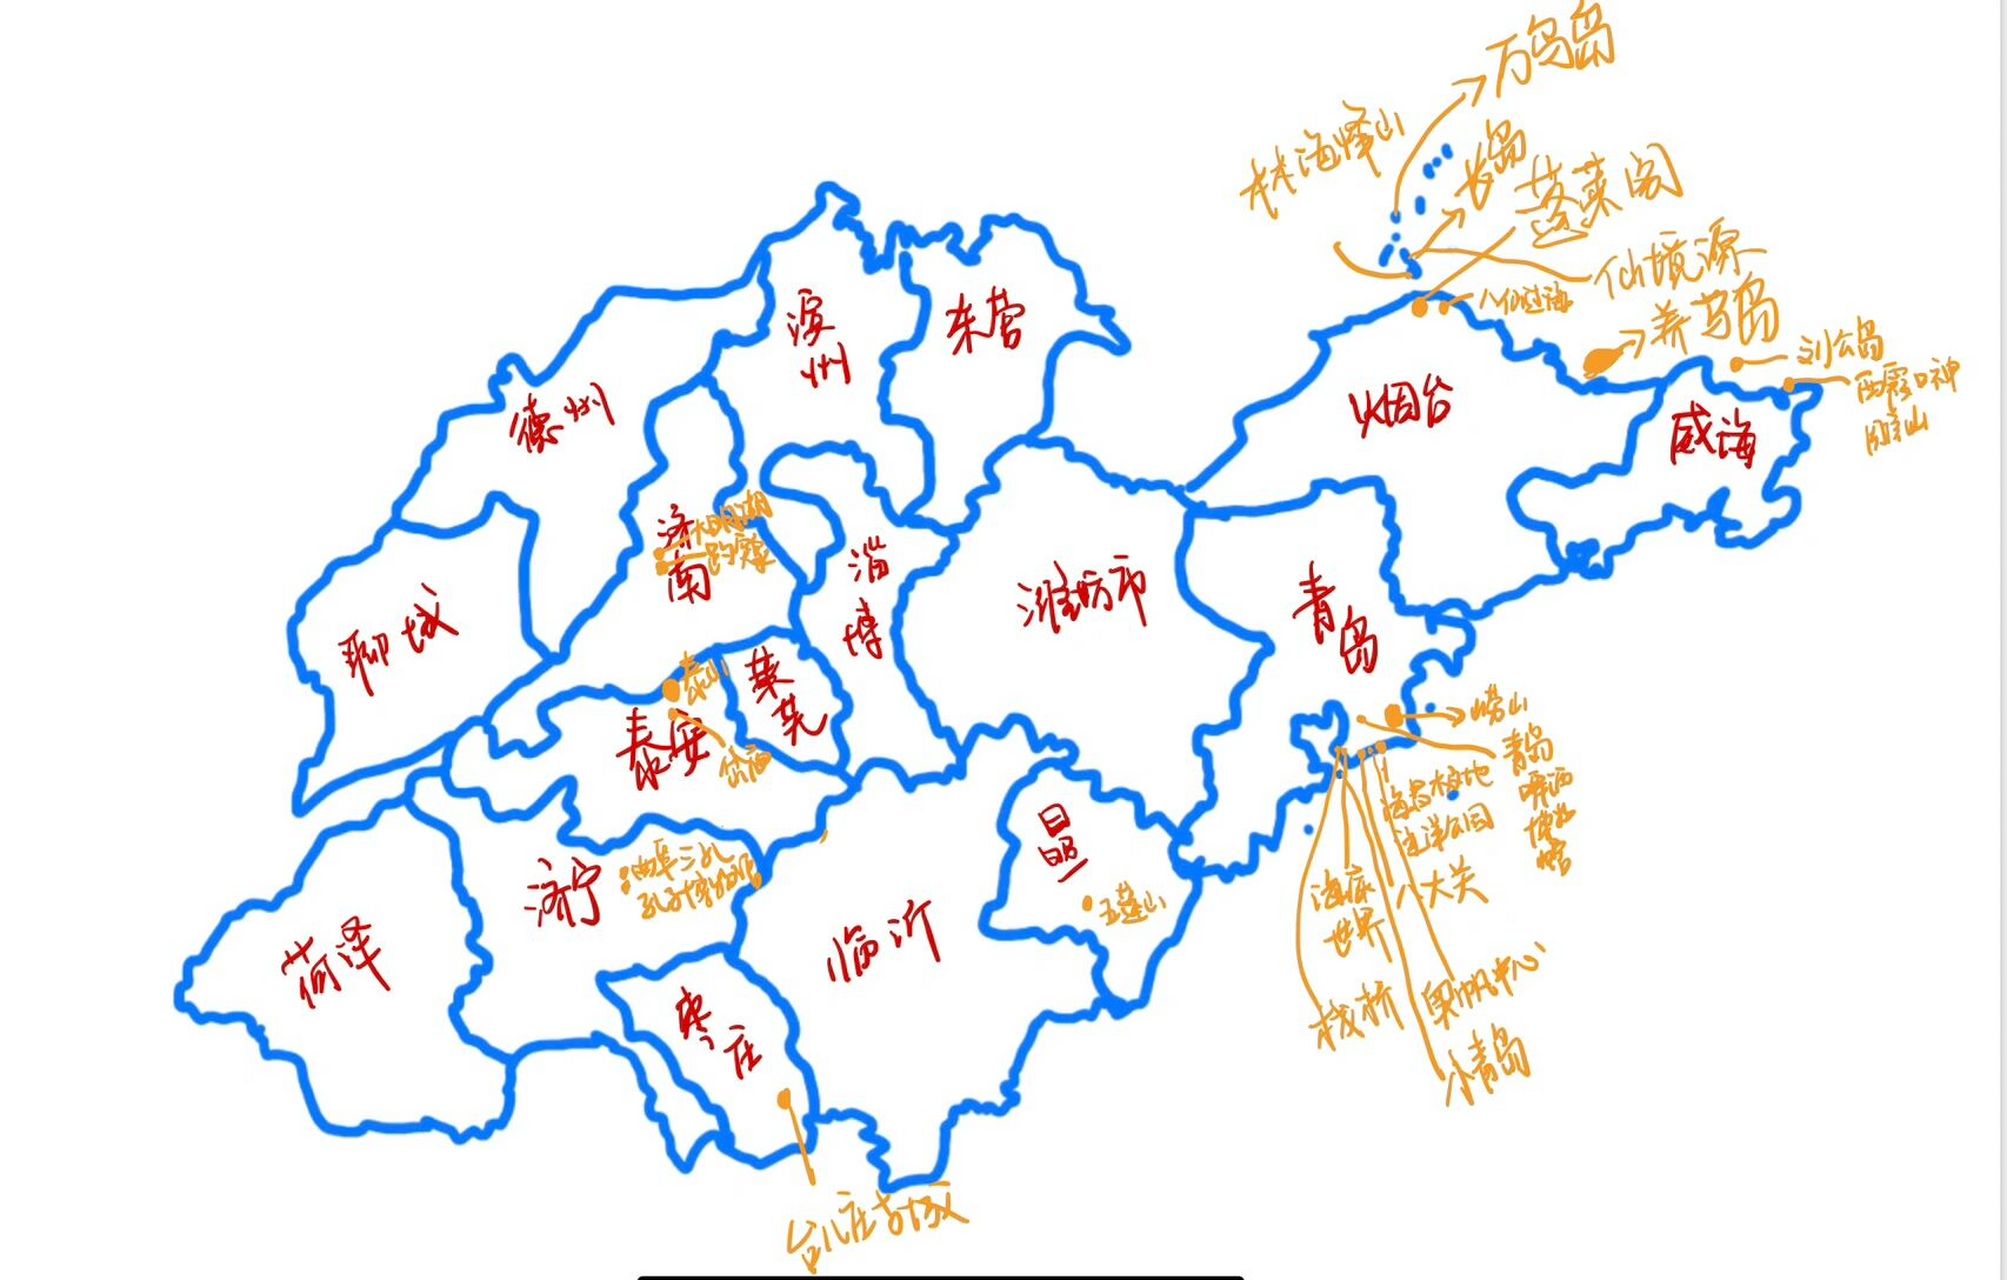 手绘旅游地图(山东版图)